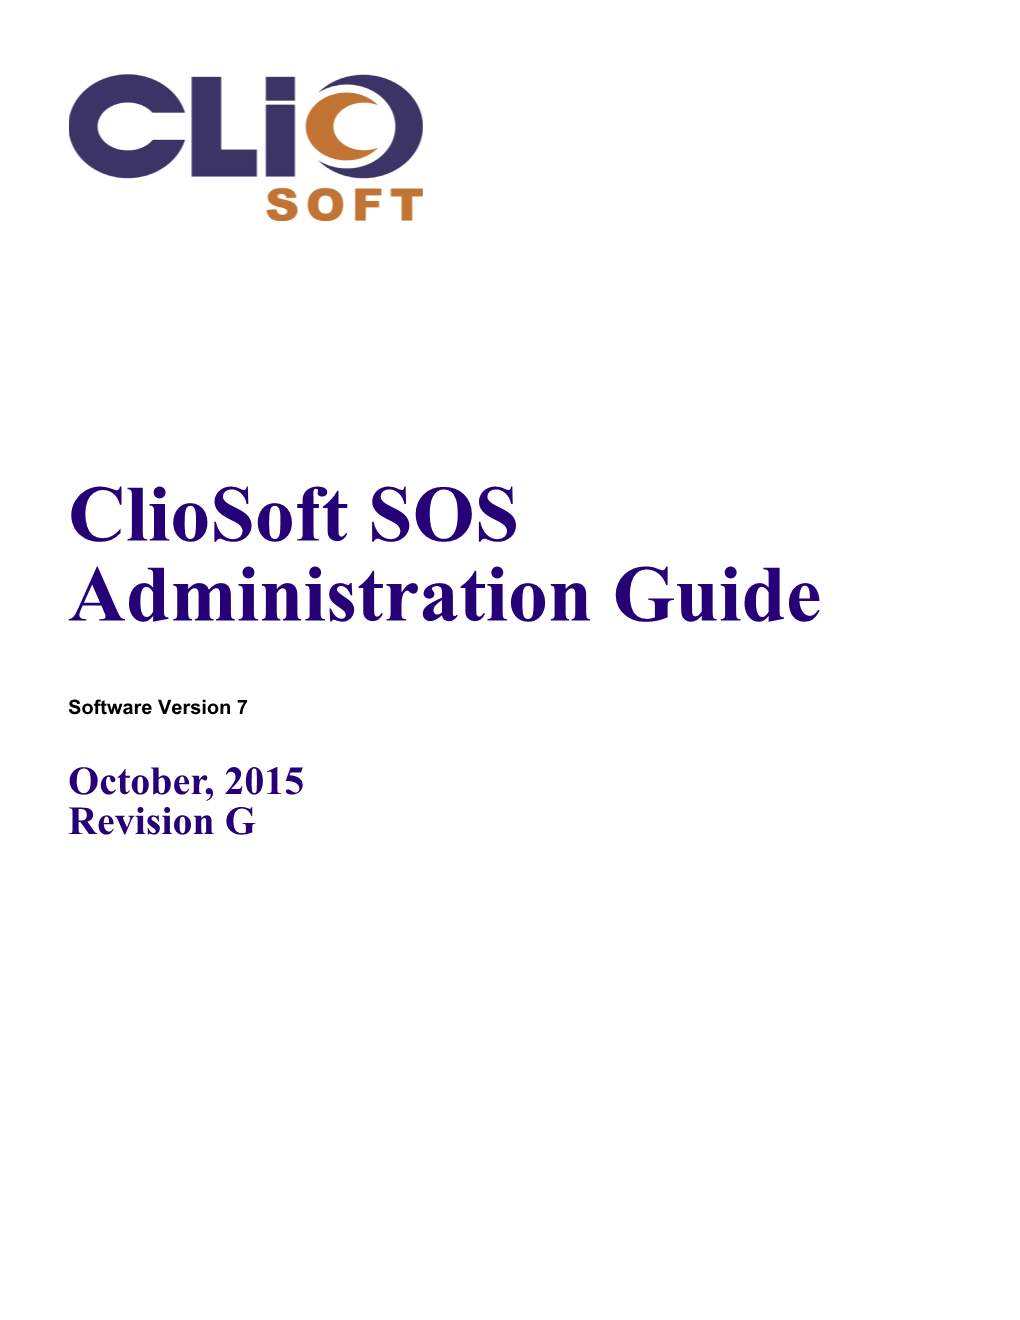 Cliosoft SOS Administration Guide